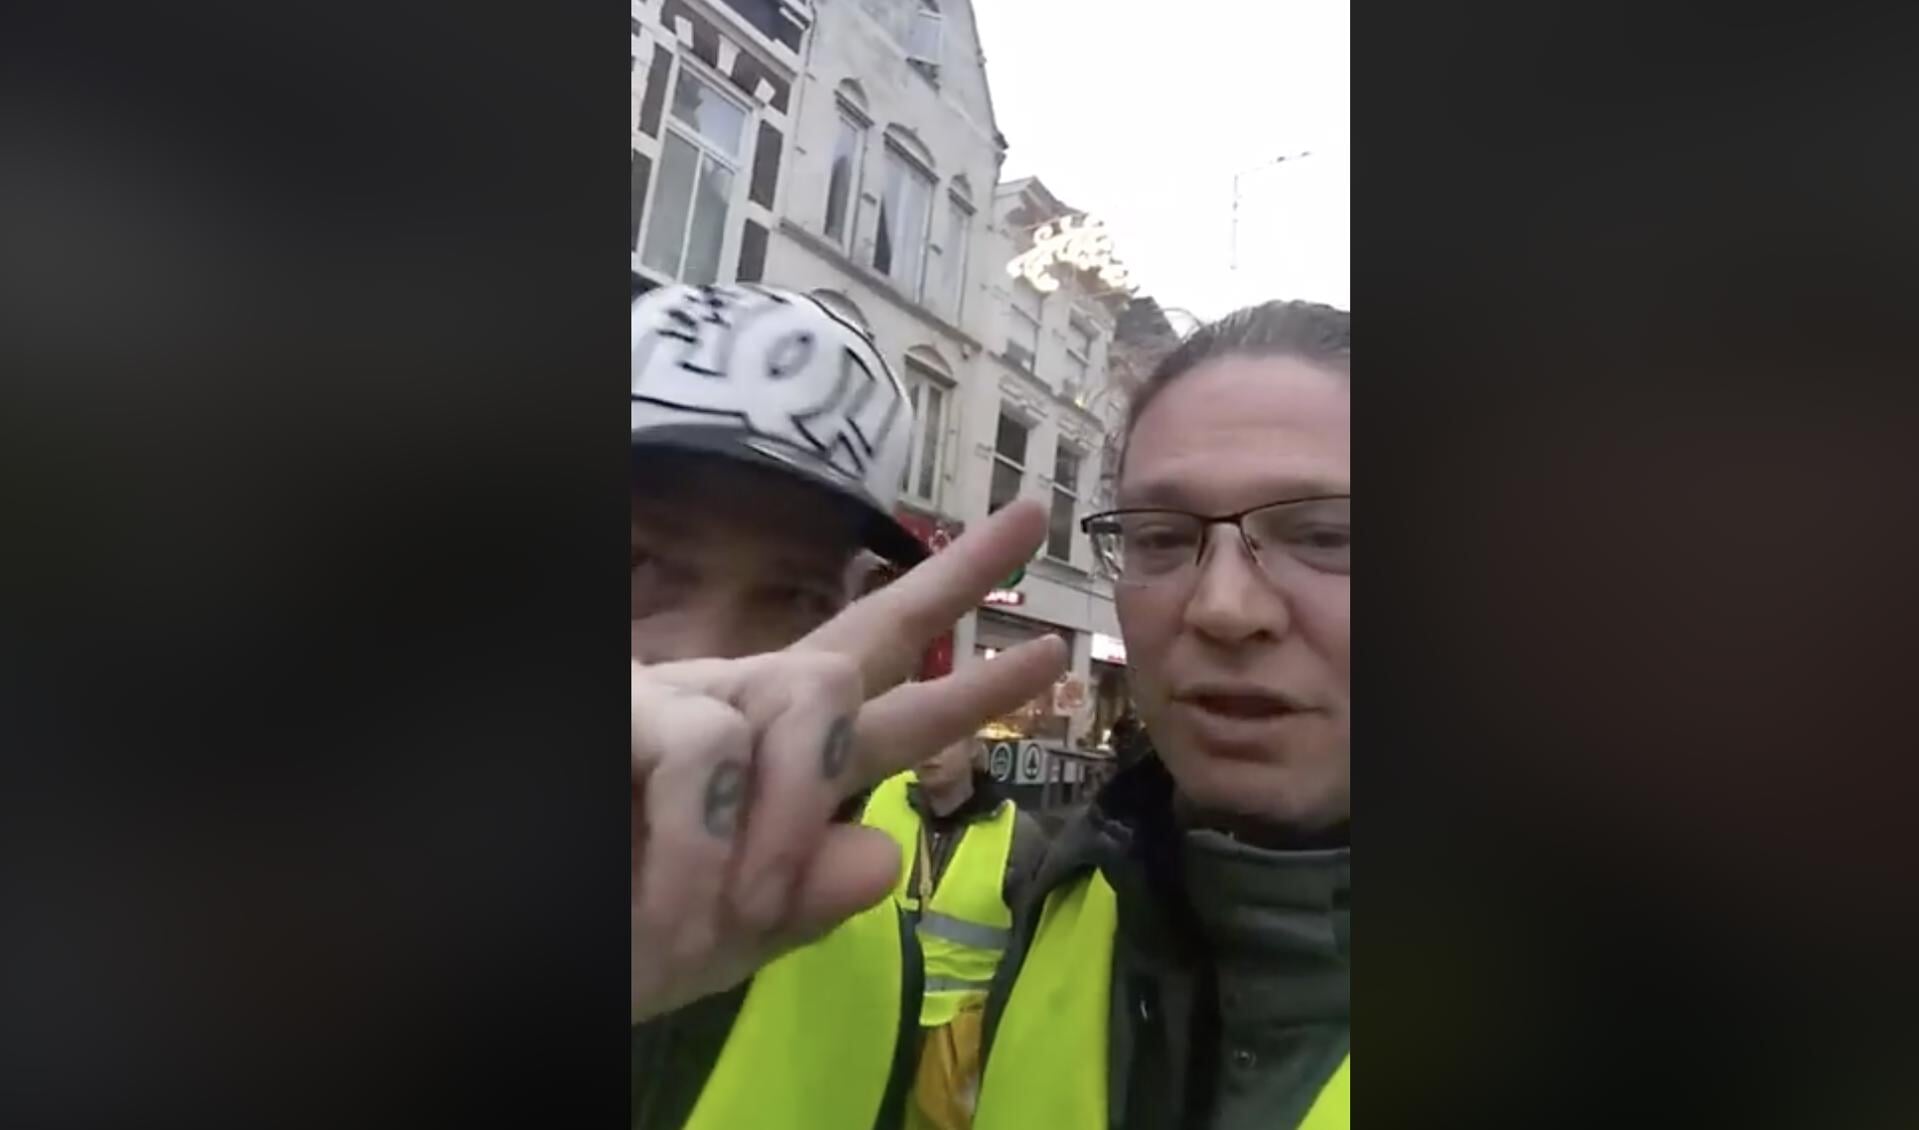 De gele hesjes streamen hun demonstratie via Facebook. 